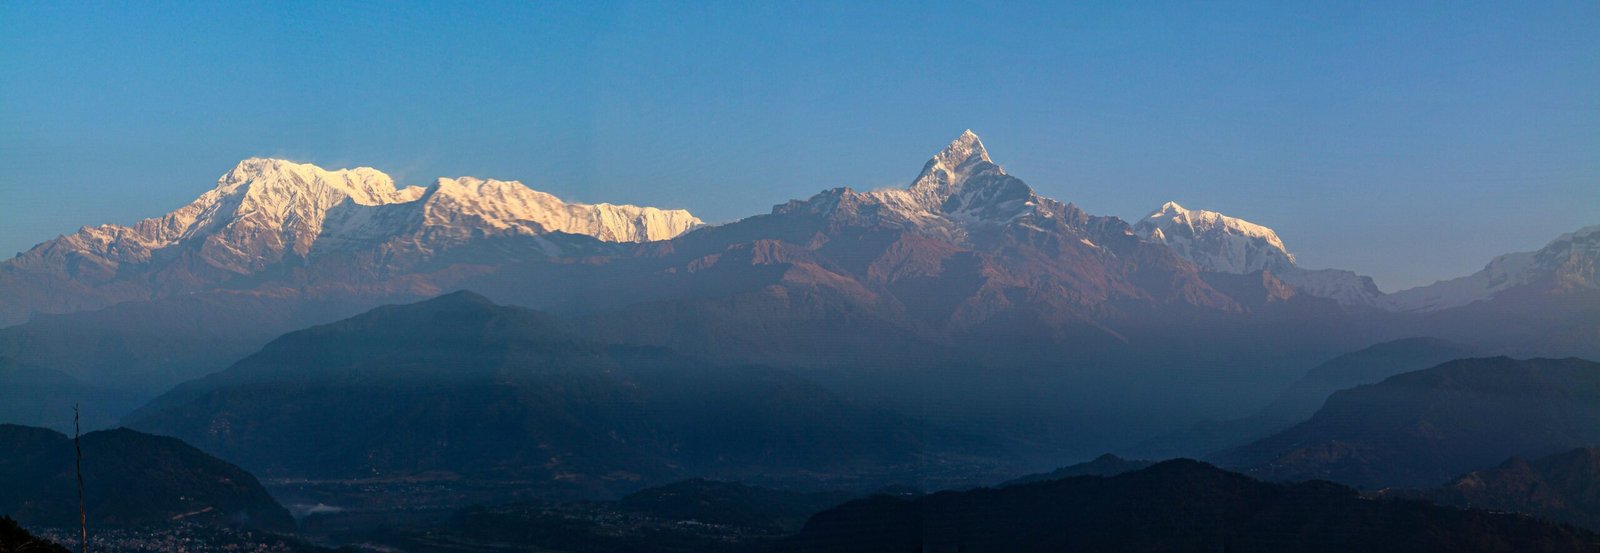 Himalaya Scenic Flight - Nepal Tour